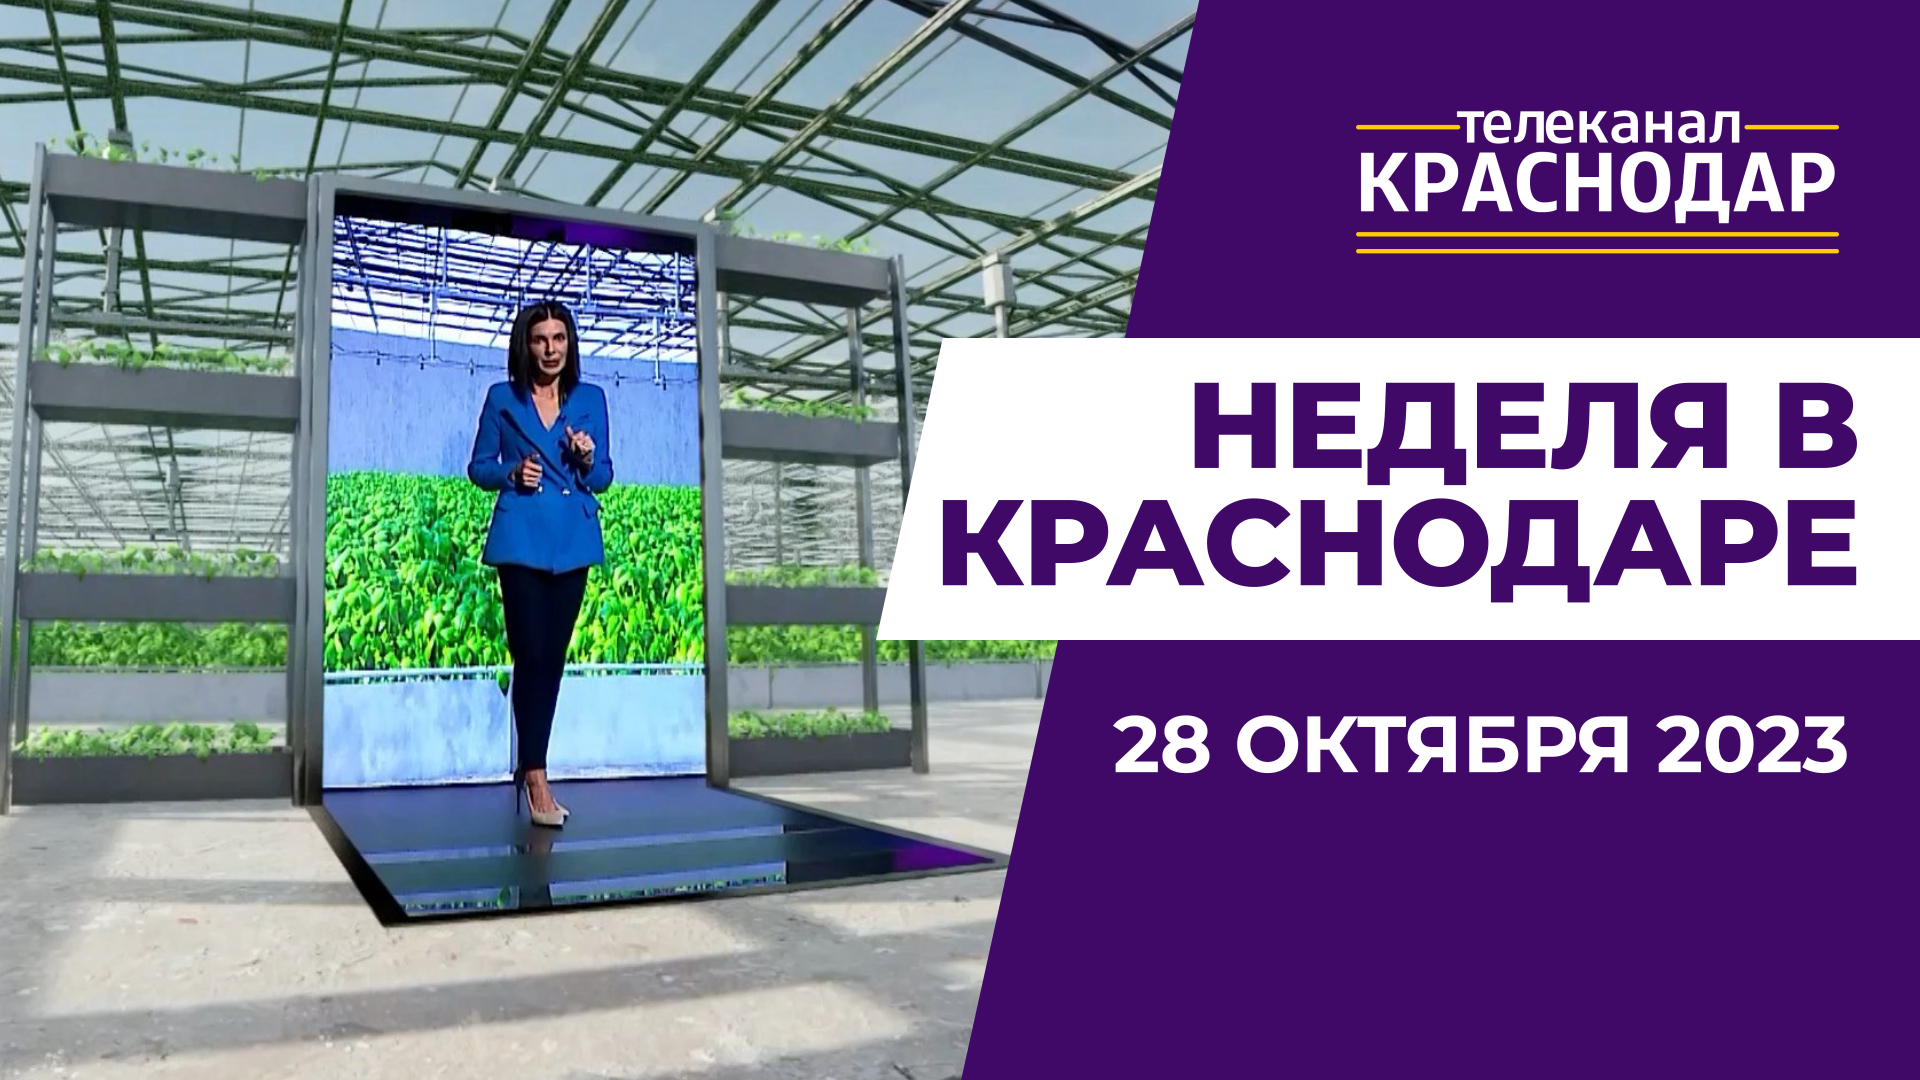 Стенд Кубани на выставке «Россия», повышение маткапитала. Неделя в Краснодаре 28 октября